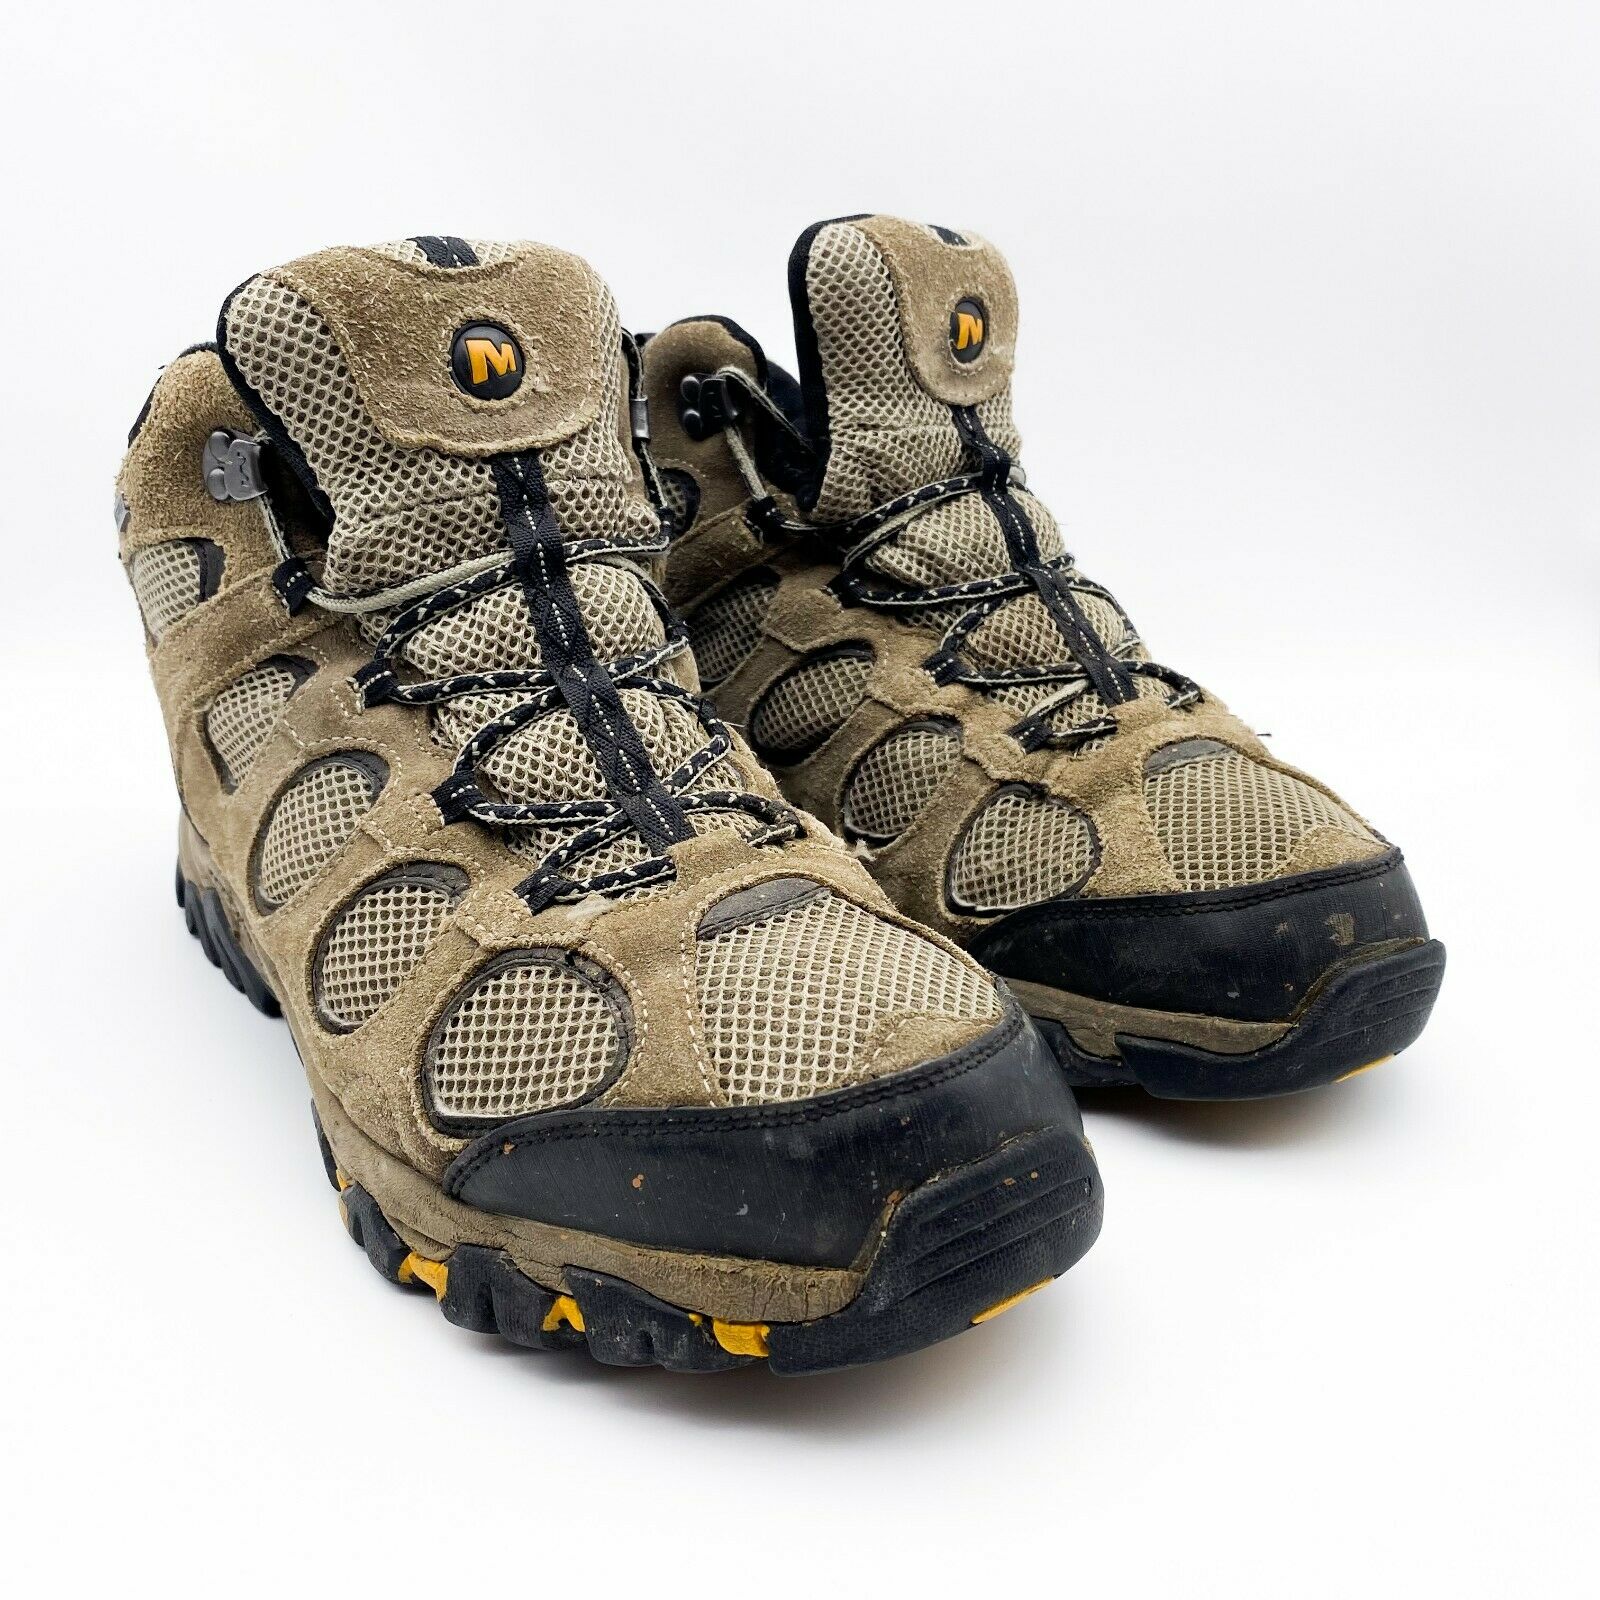 MERRELL Hilltop Ventilator Men's Brown Waterproof Mid Hiking Boots Size 11